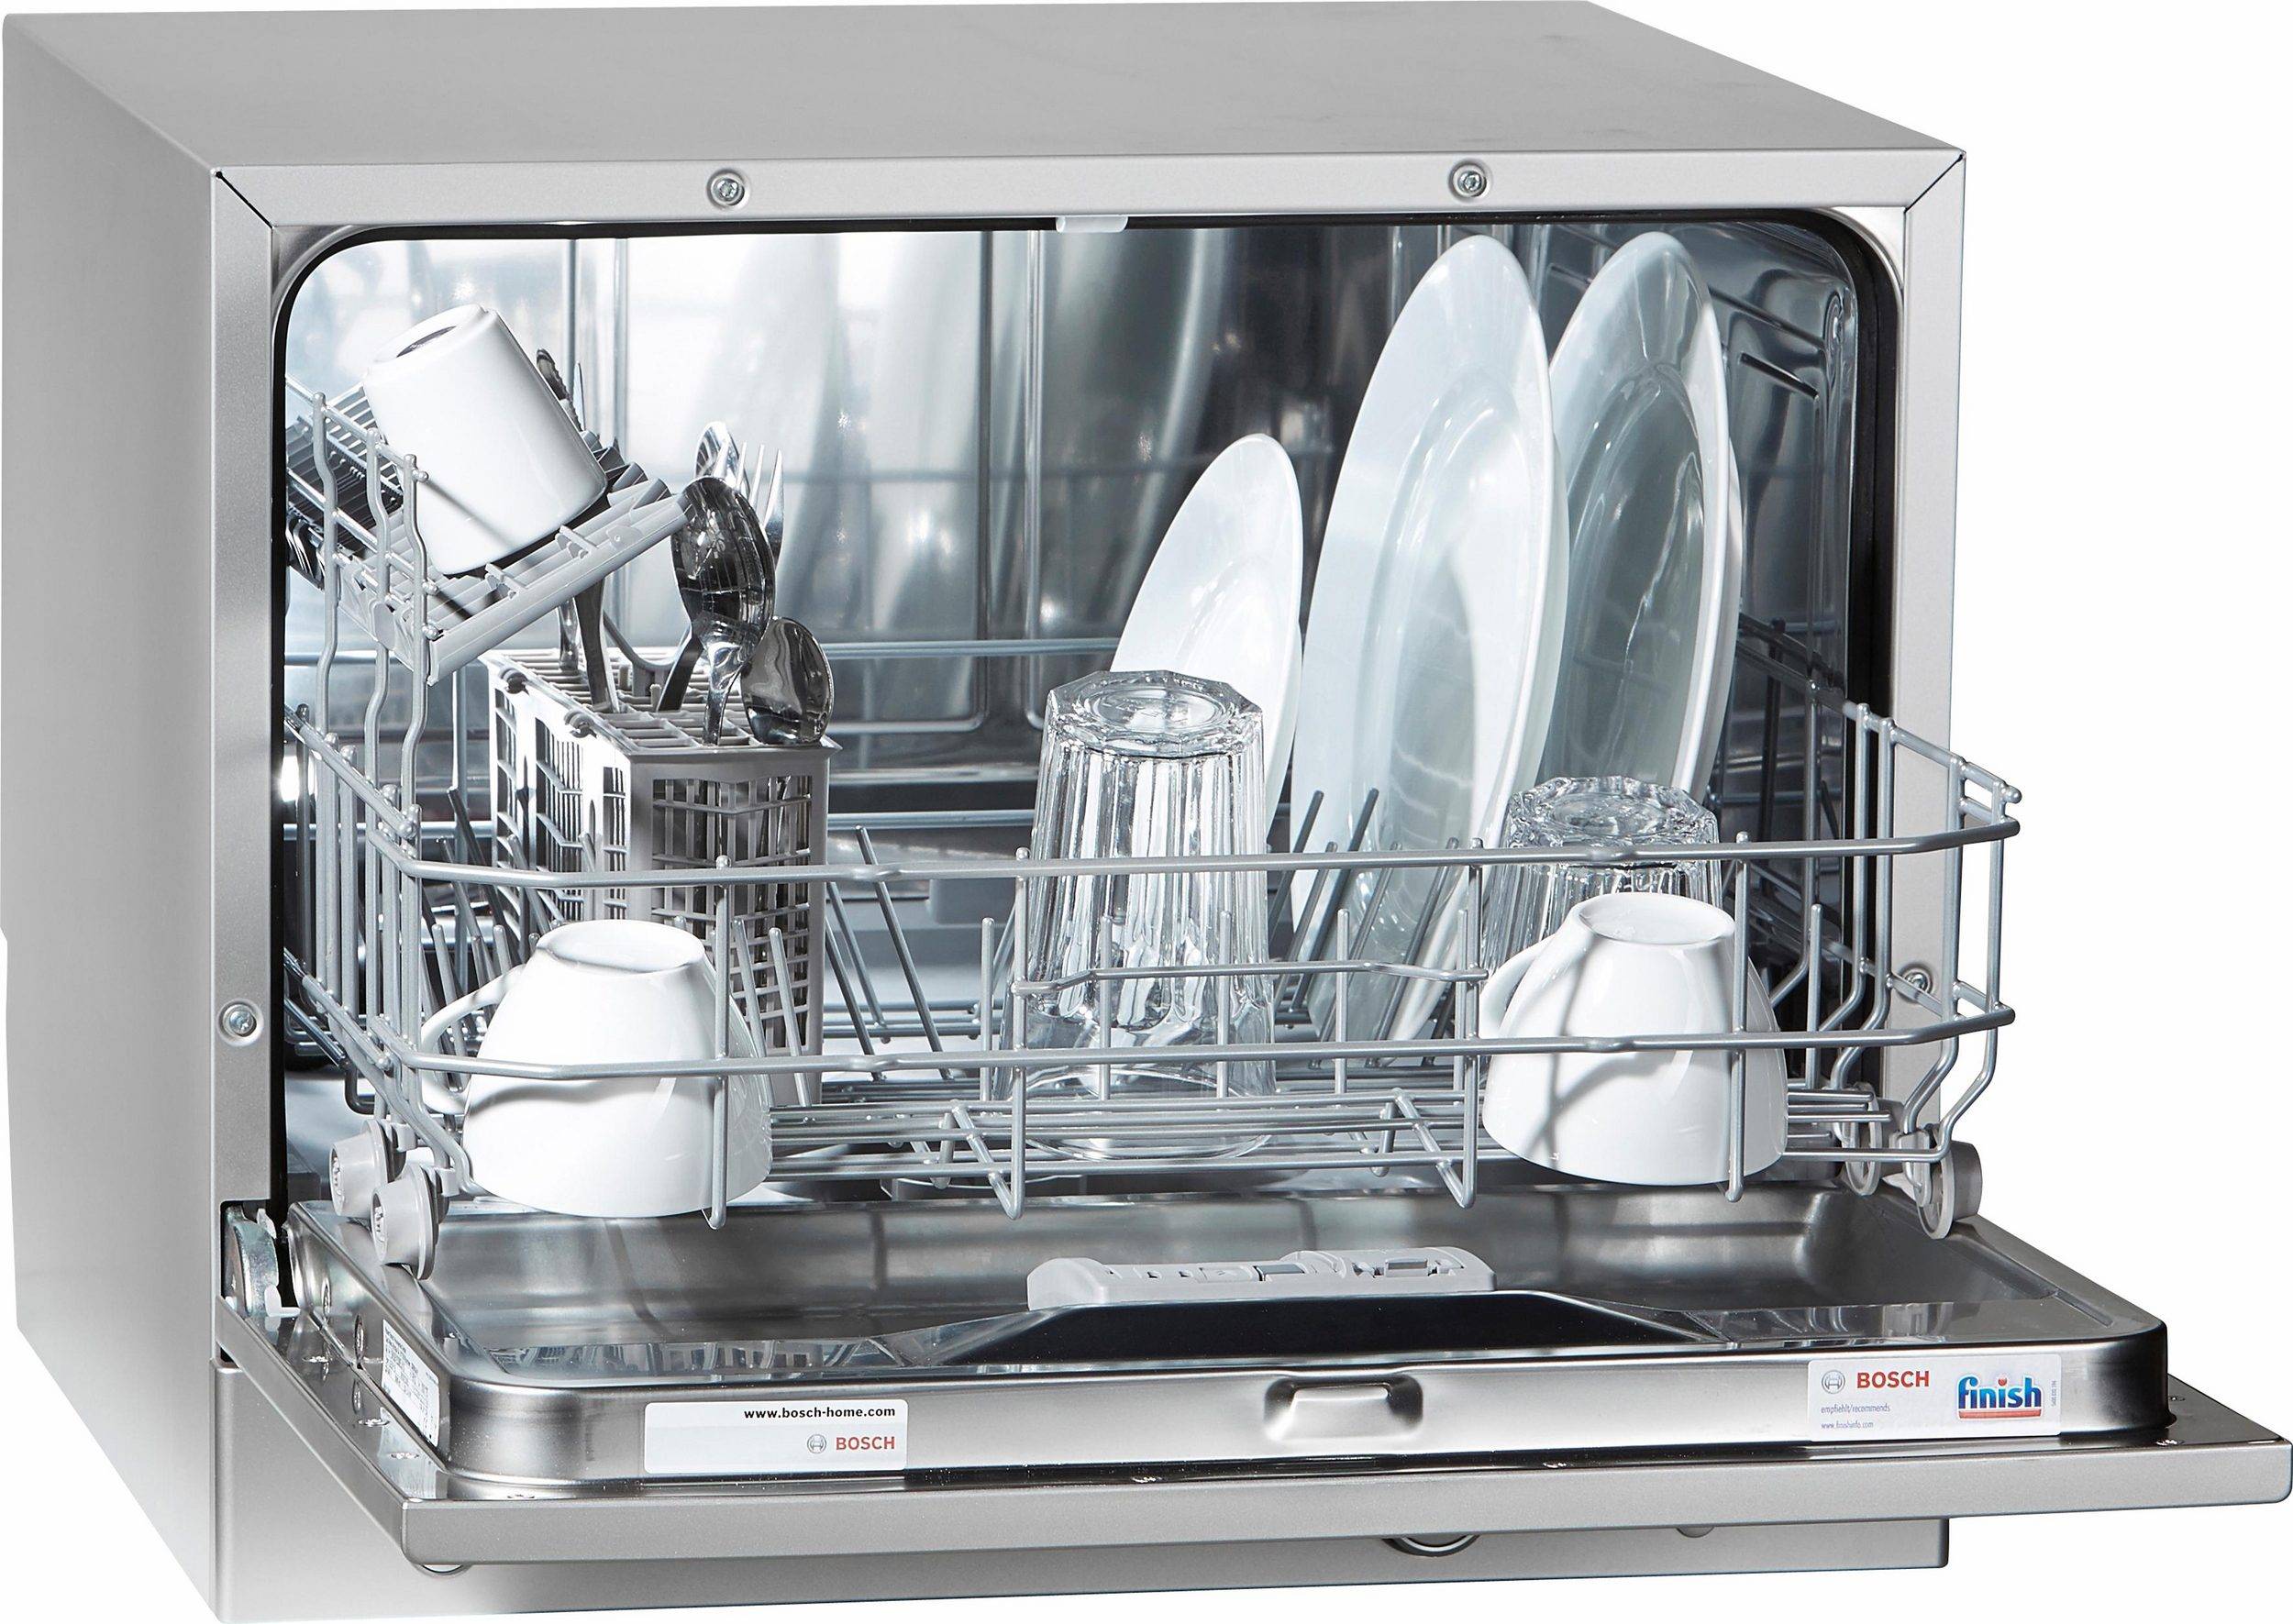 Купить посудомоечную бу. Посудомоечная машина Bosch SKS 51e28. Посудомоечная машина бош настольная sks51e88. Компактная посудомоечная машина Bosch sks51e32eu, белый. Компактные посудомоечные машины Bosch s2r1b.